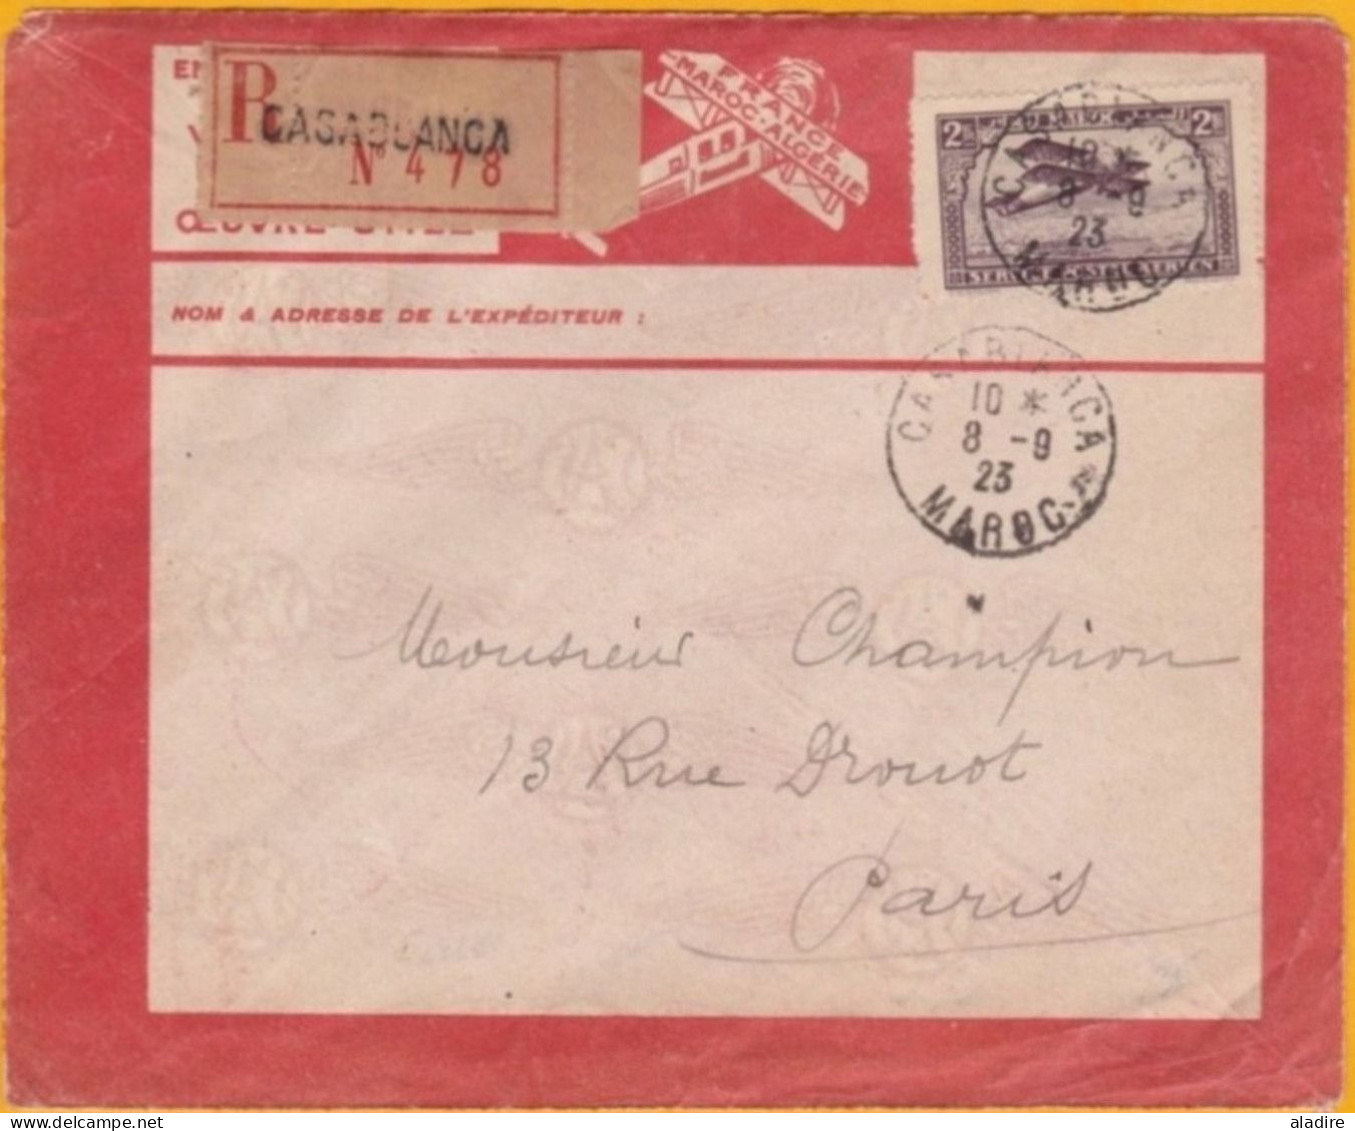 8 Septembre 1923 - Maroc Précurseur Avion - Lettre Recommandée De Casablanca Vers Paris Par Lignes Aériennes Latécoère - Airmail